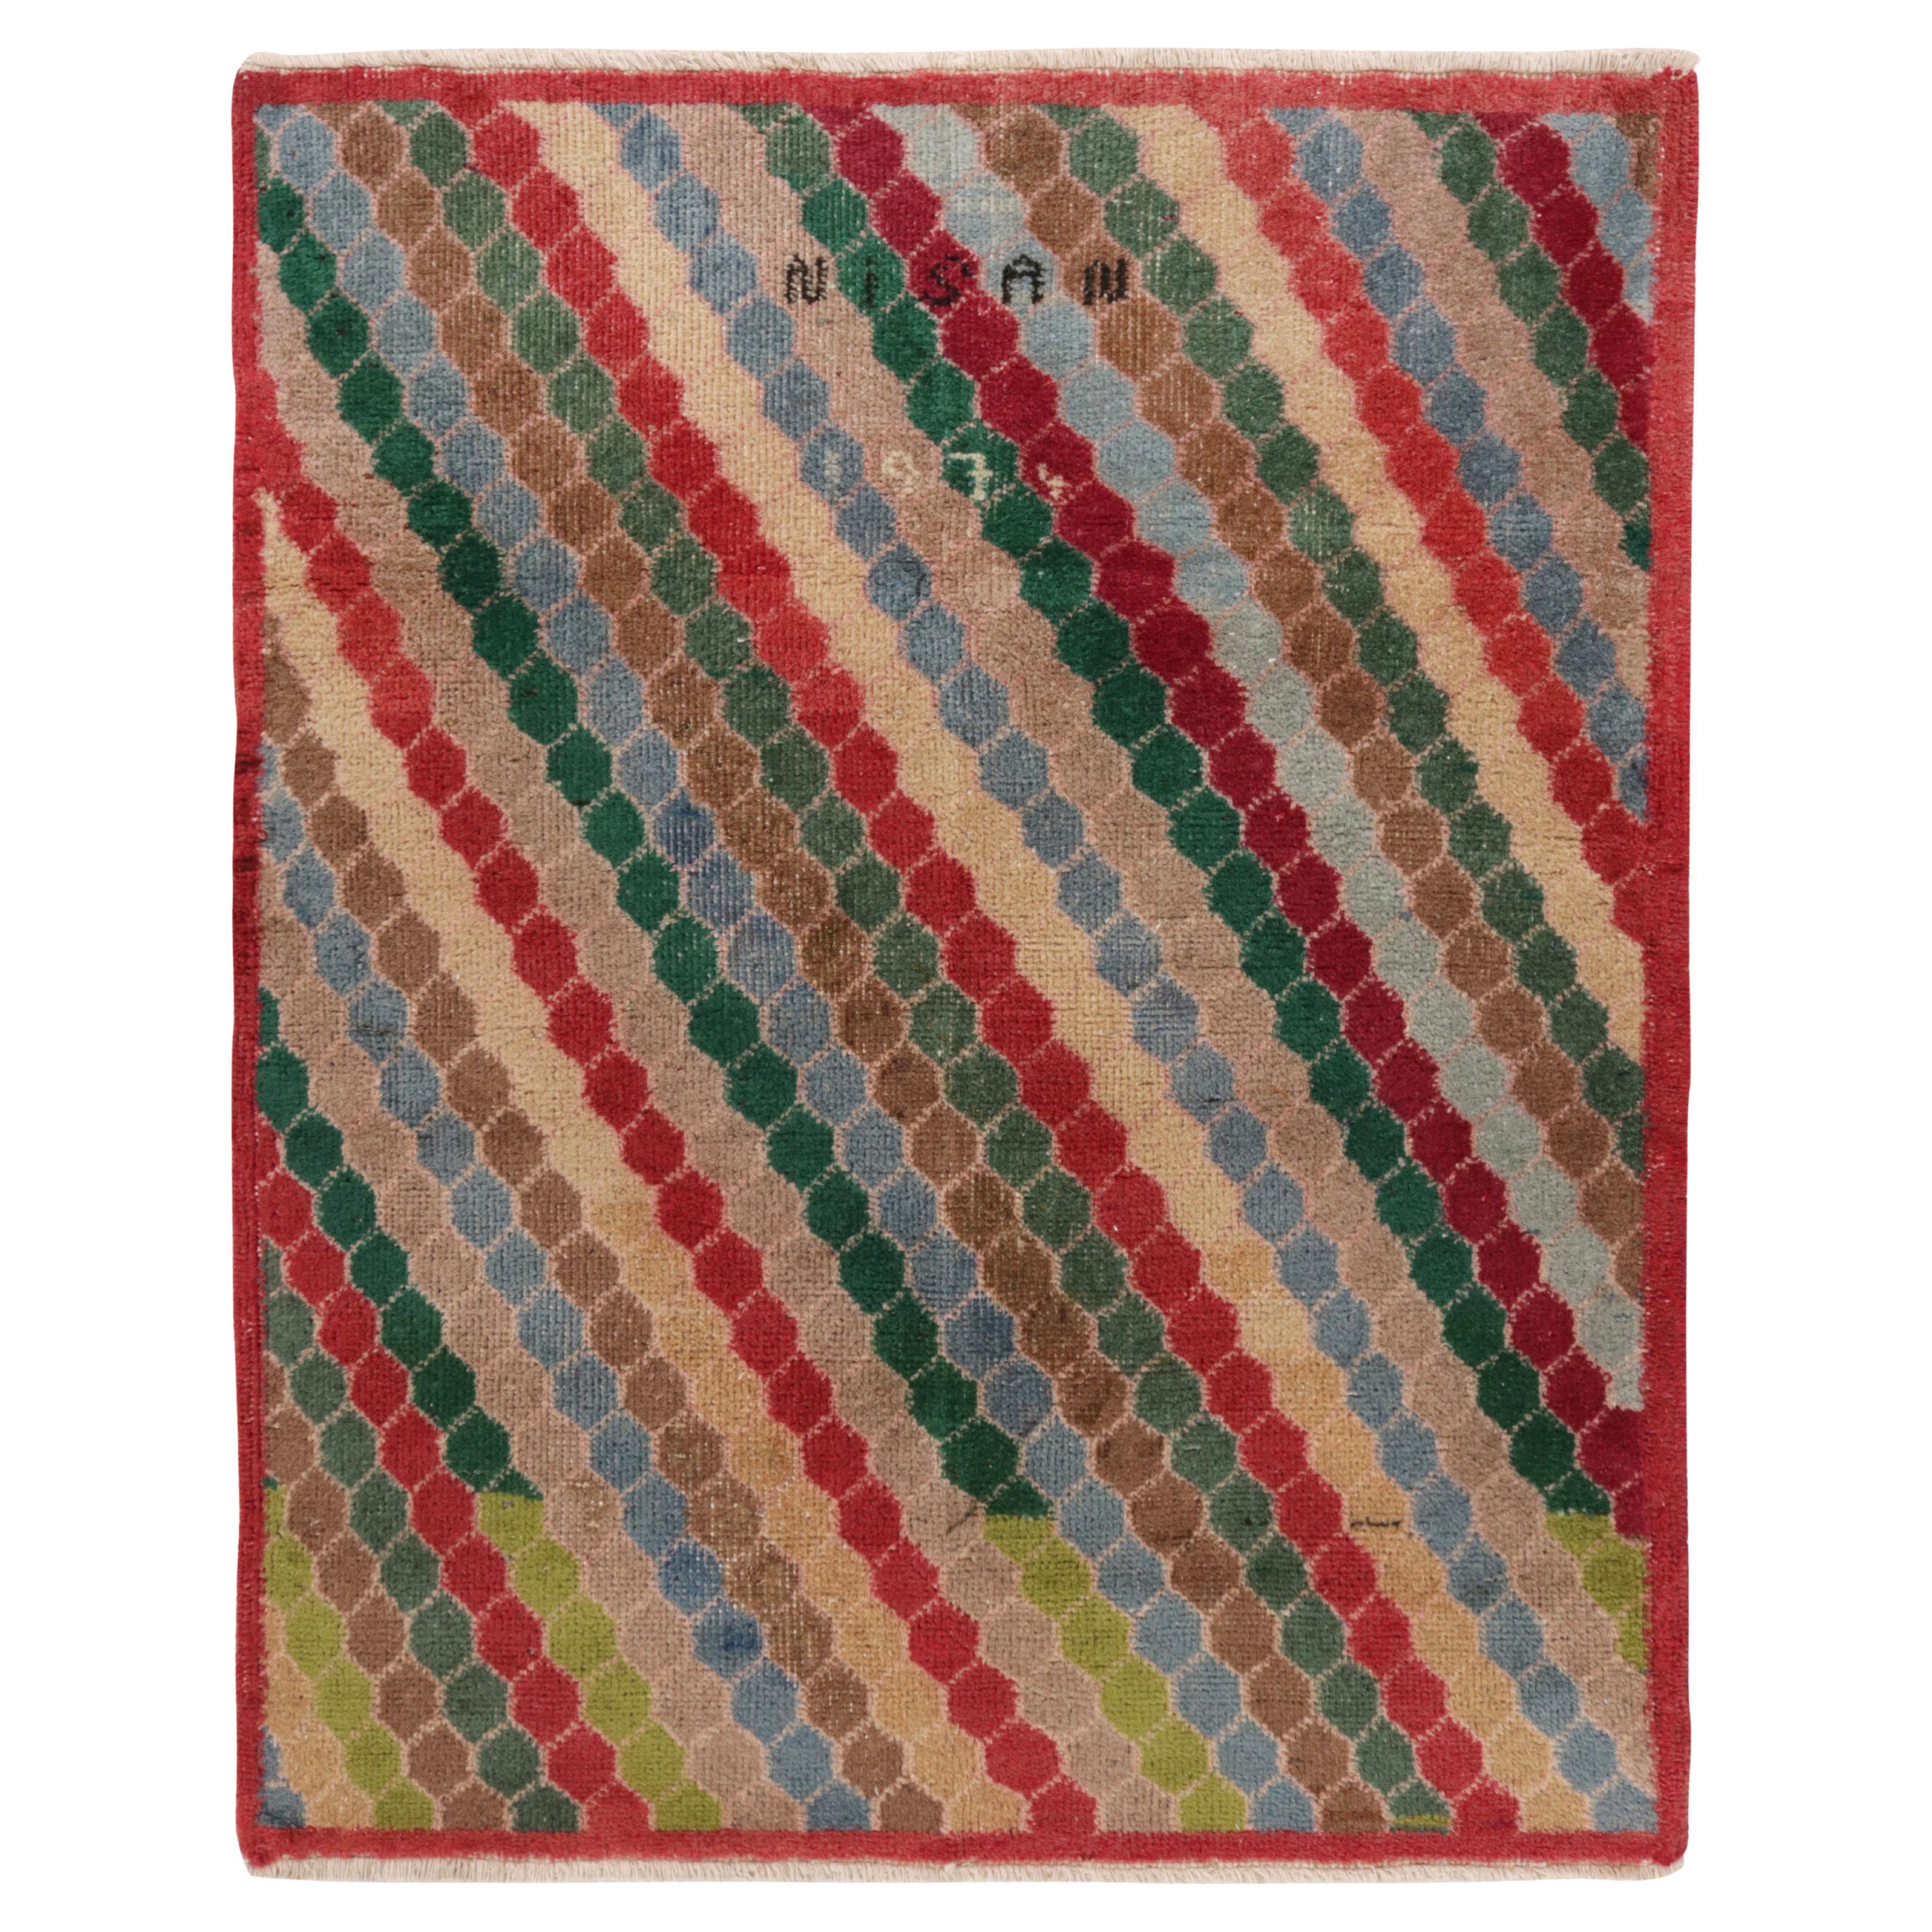 Vintage 1970s Art Deco Rug in Red, Beige-Brown Geometric Pattern by Rug & Kilim